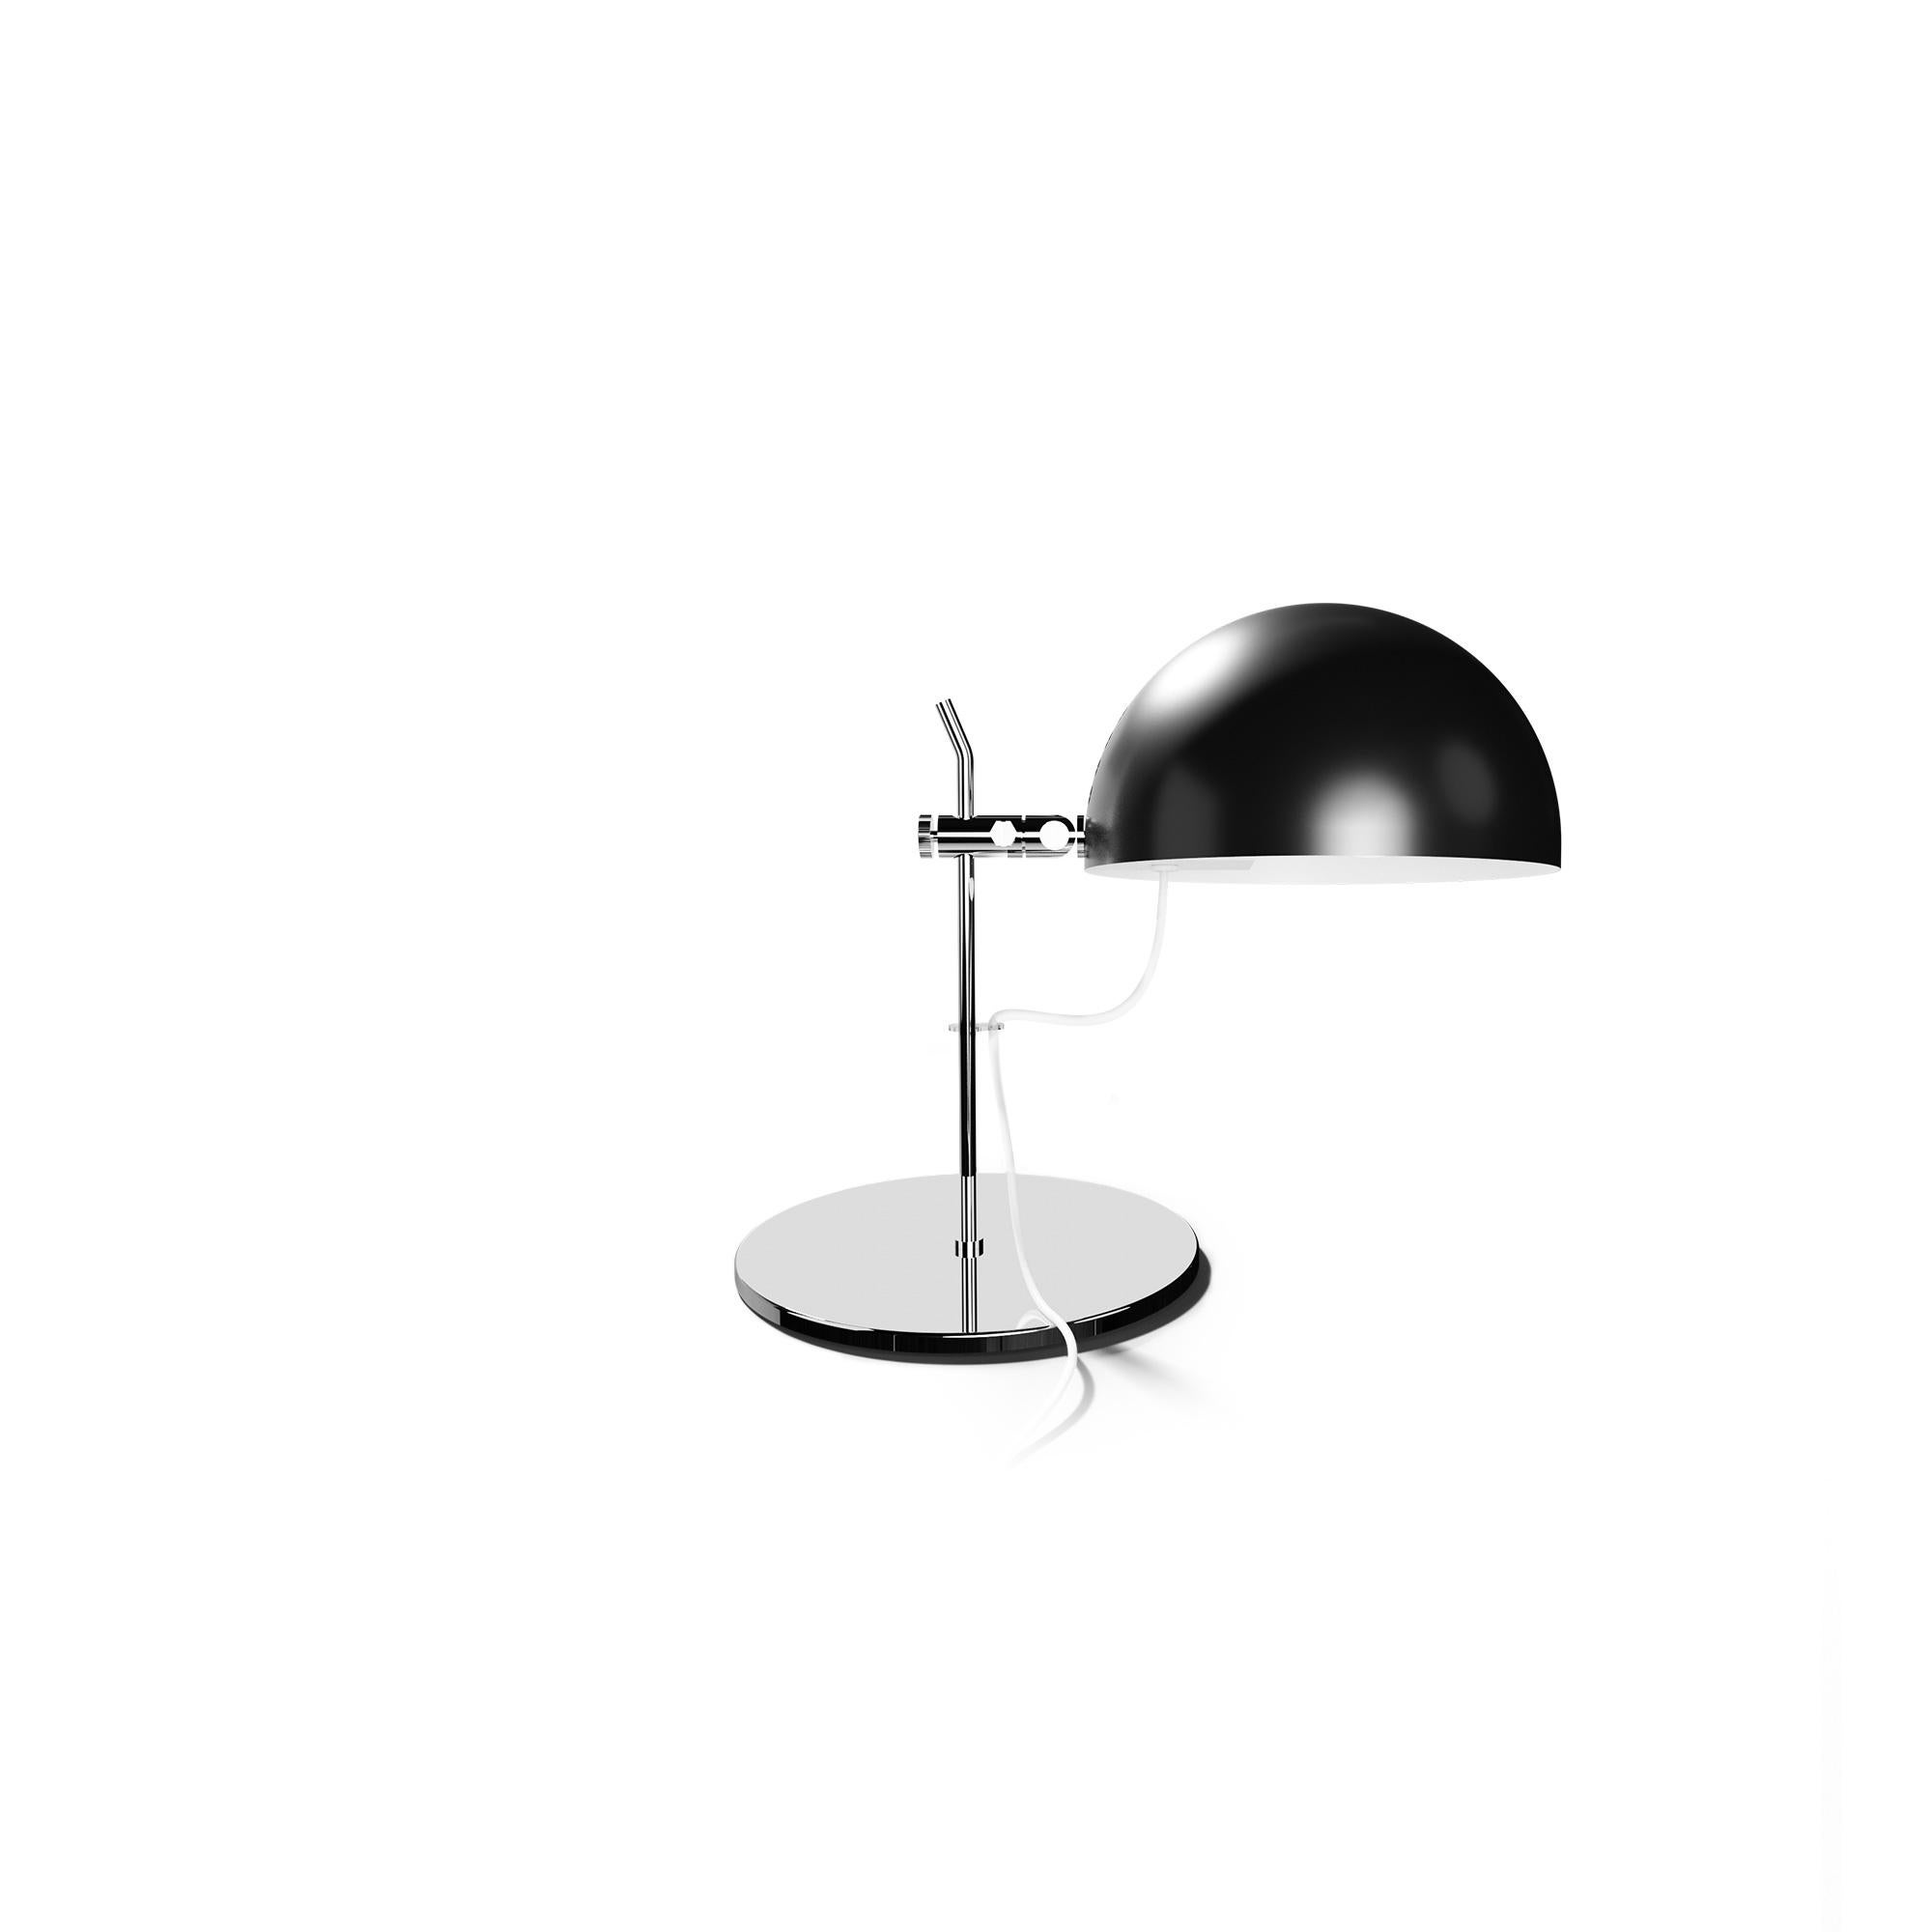 Alain Richard 'A21' Desk Lamp in Chrome for Disderot For Sale 7